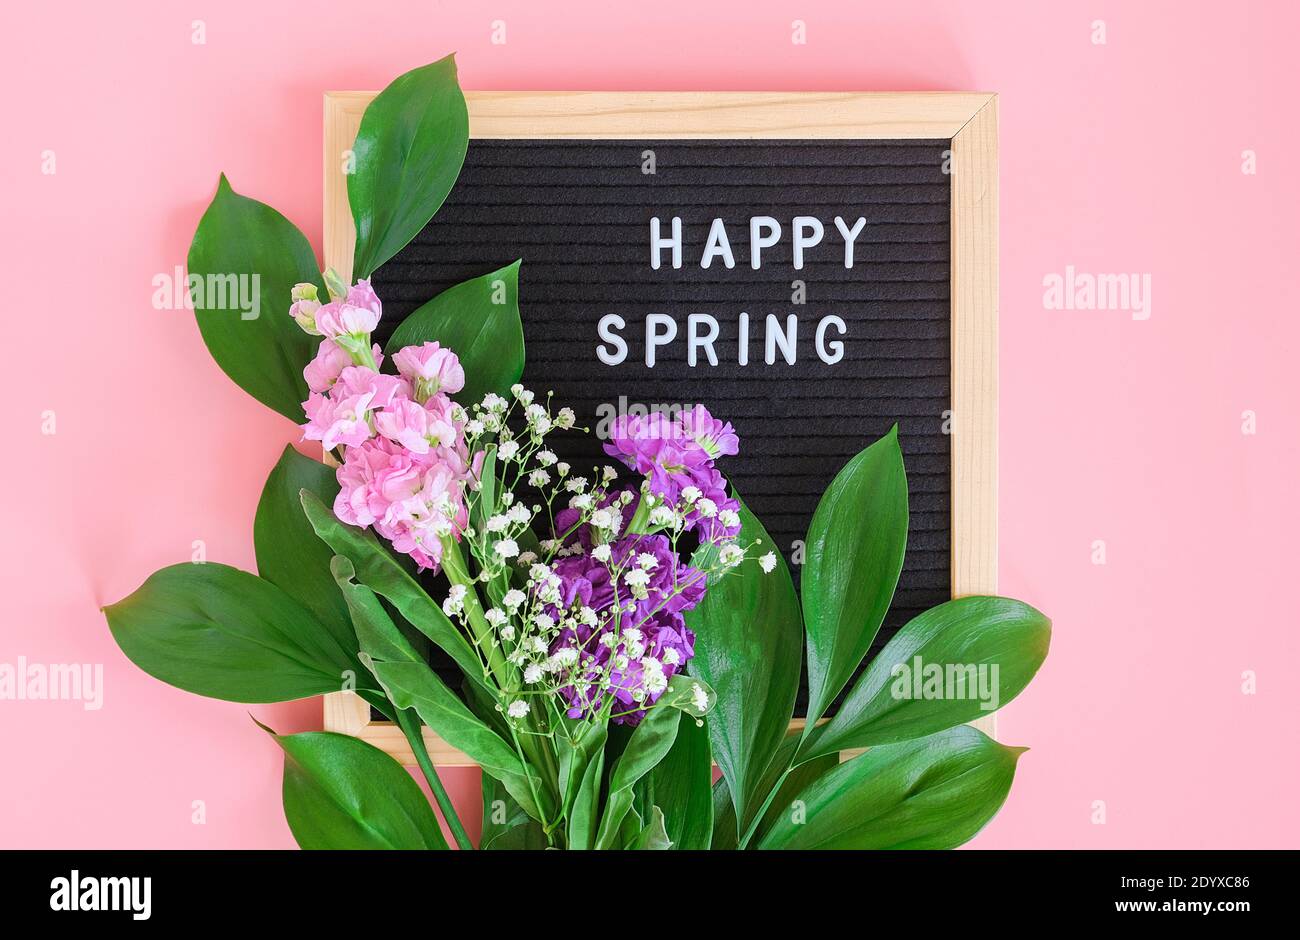 Happy Spring Text auf schwarzem Briefbrett und Blumenstrauß auf rosa Hintergrund. Konzept Hallo Frühling, Frühling. Vorlage für Postkarte, Gruß c Stockfoto